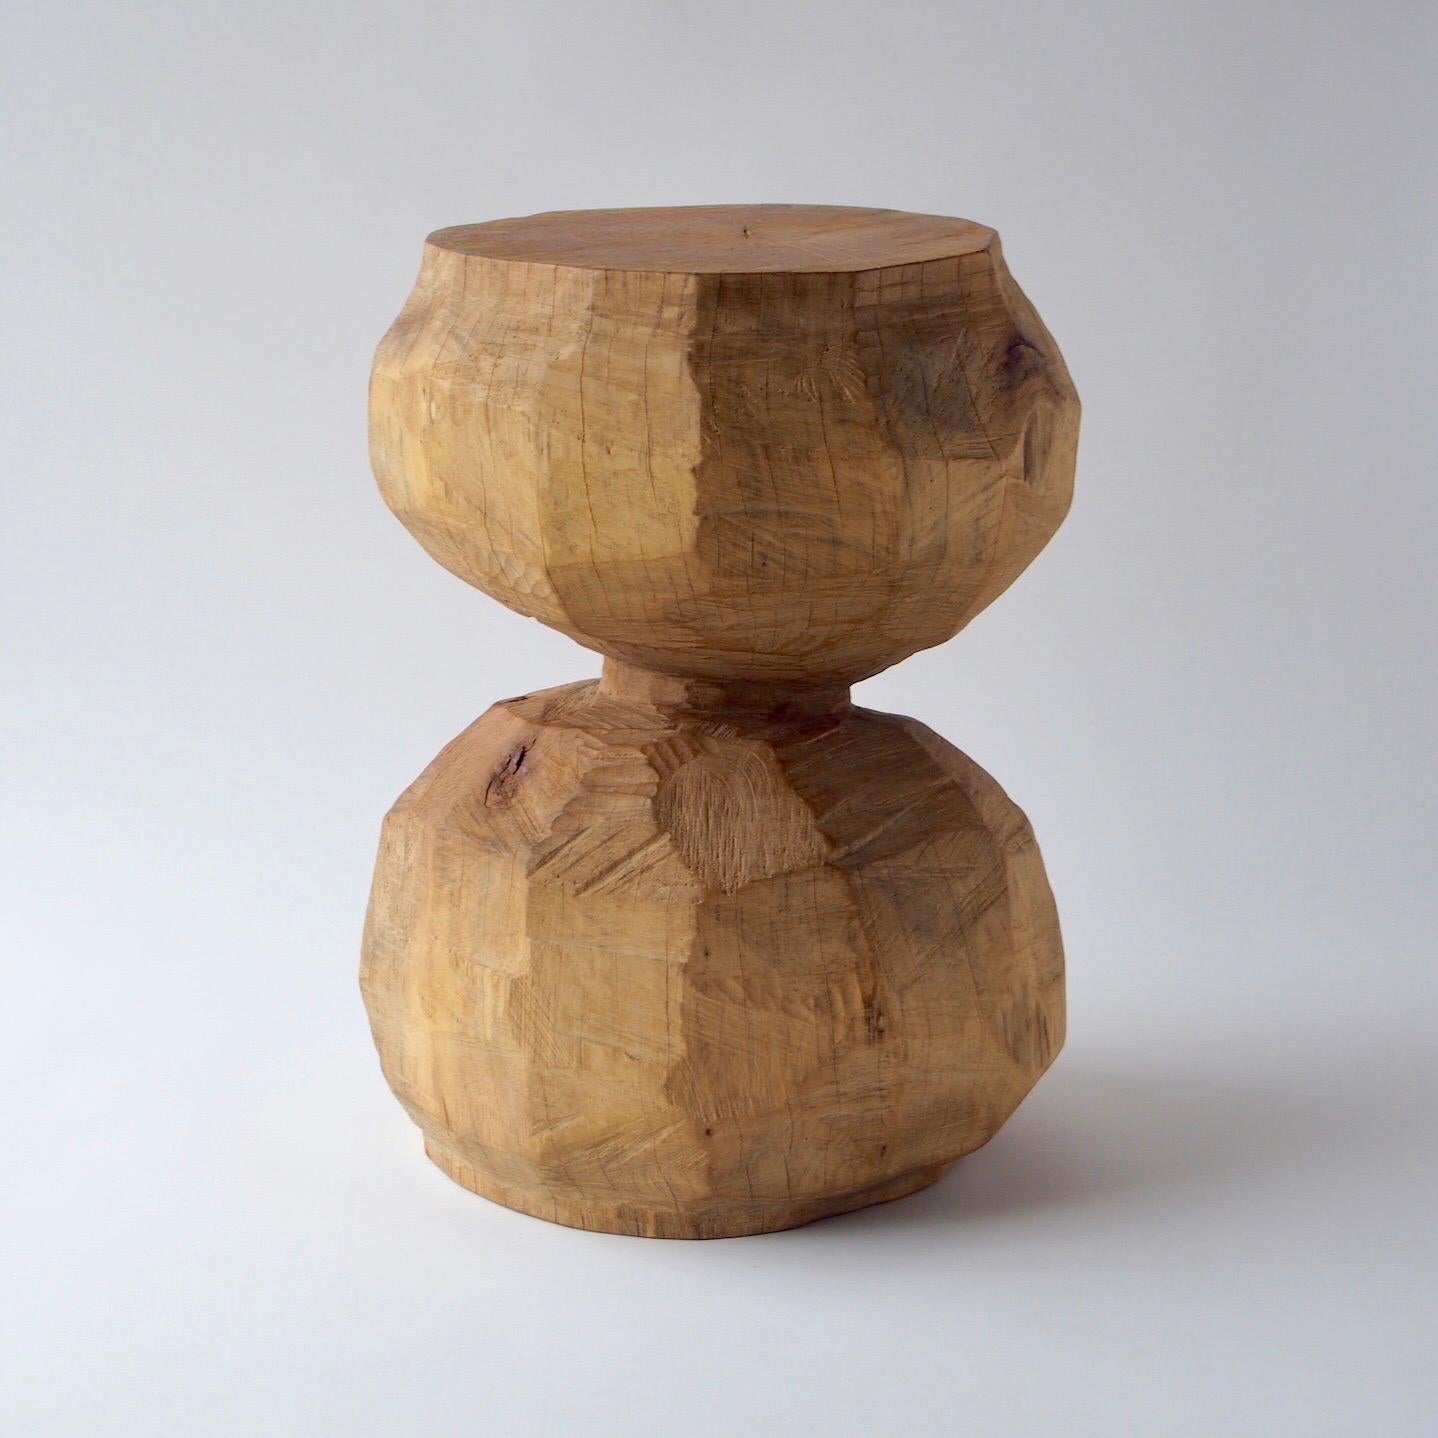 Nom : Sous la terre
Tabouret sculptural par Zogei meubles sculptés
Matériau : Zelkova
Cette œuvre est taillée dans le bois avec des sortes de tronçonneuses.
La plupart des bois utilisés pour les œuvres de Nishimura ne peuvent servir à rien, ces